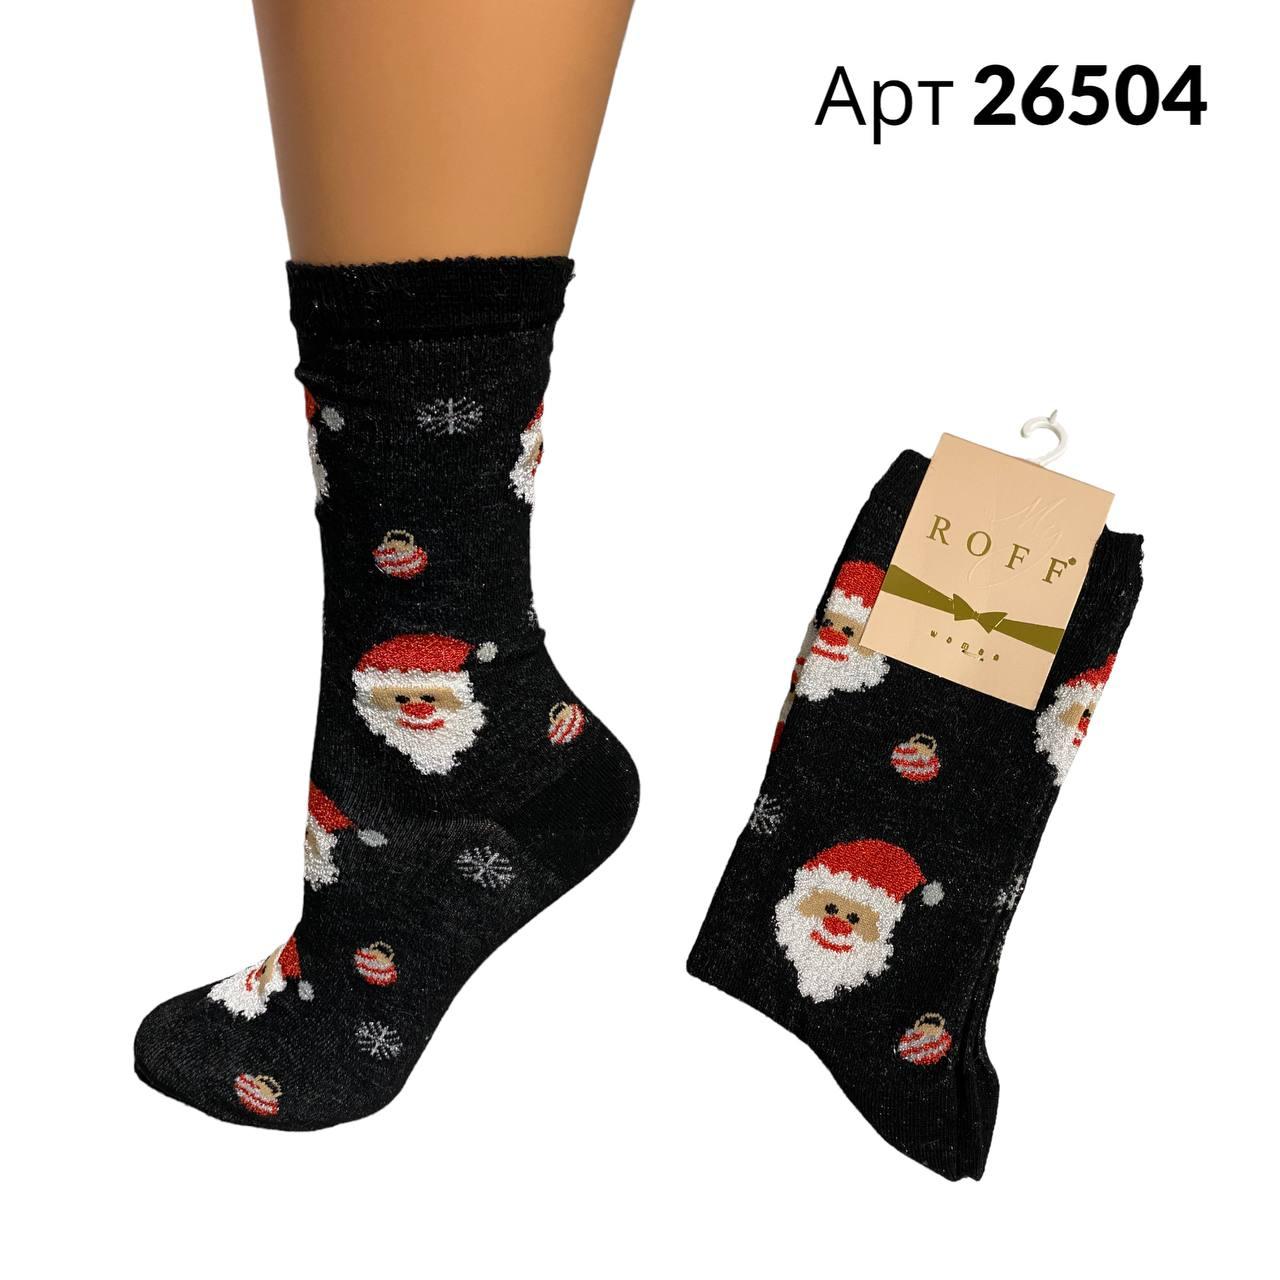 Новорічні жіночі демісезонні шкарпетки бамбук р 38-40 ROFF арт 26504 Чорні